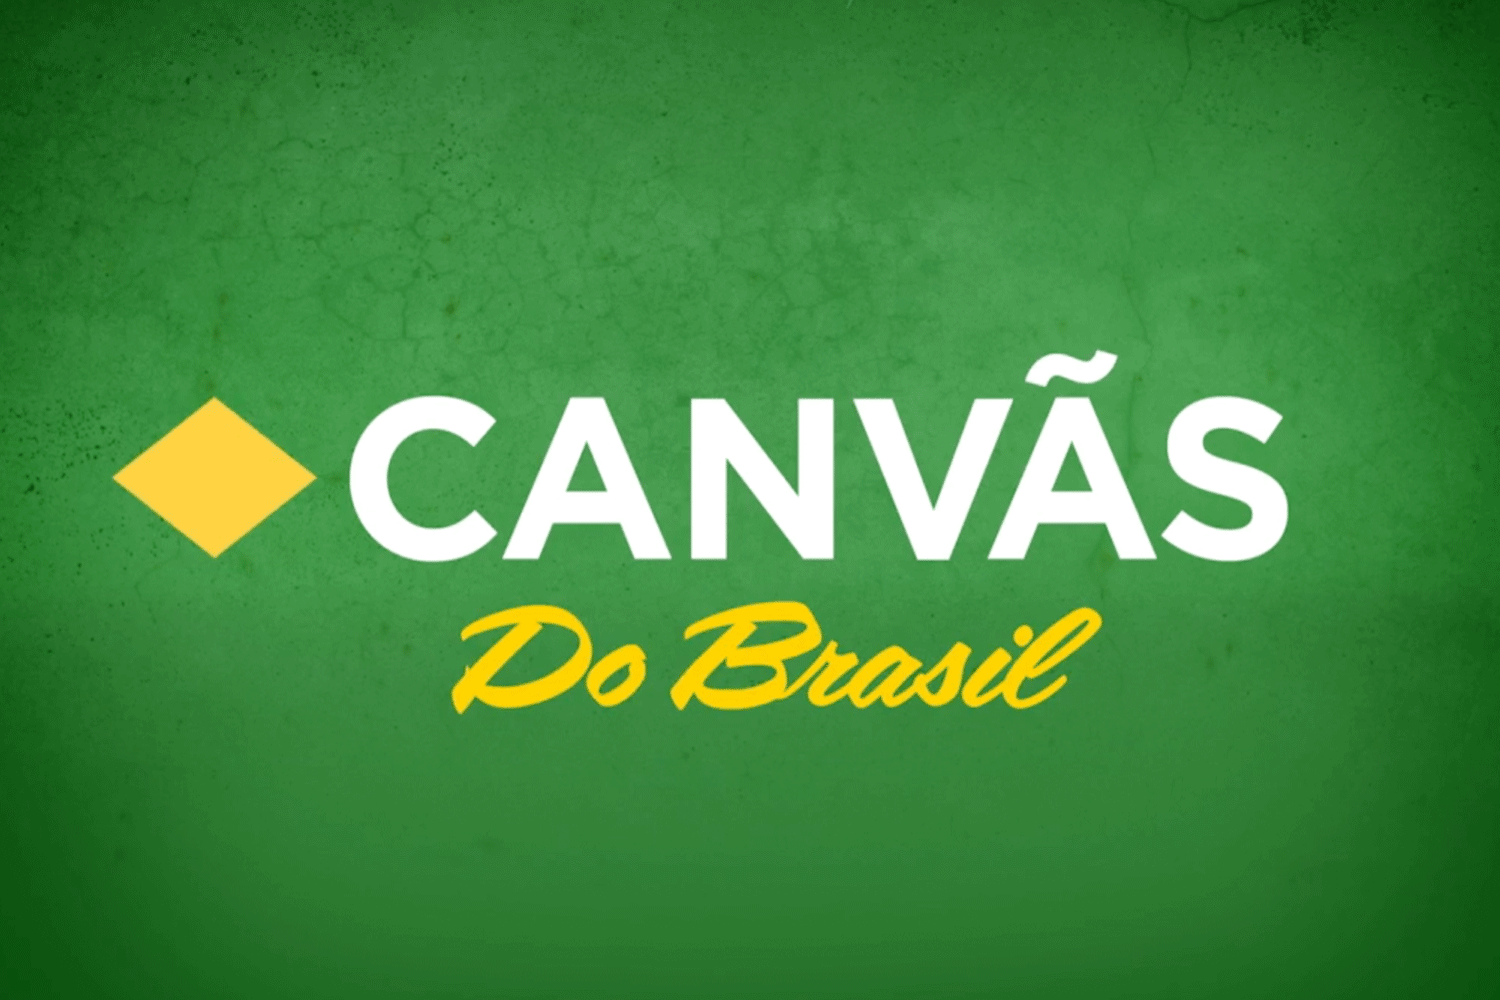 Canvas - Canvãs do Brazil